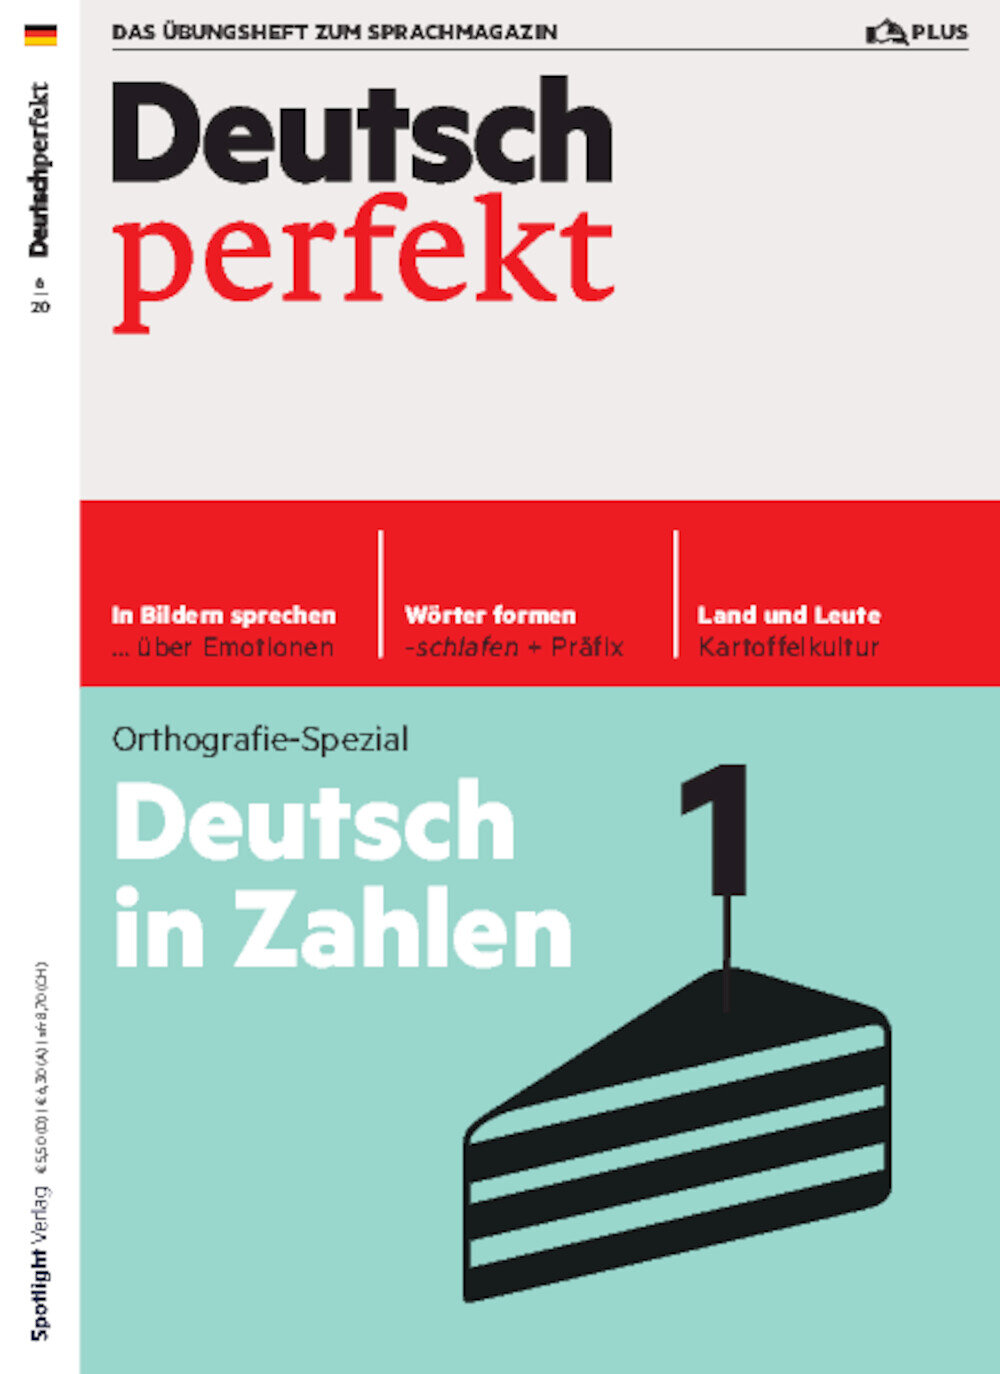 Deutsch perfekt PLUS 06/2020